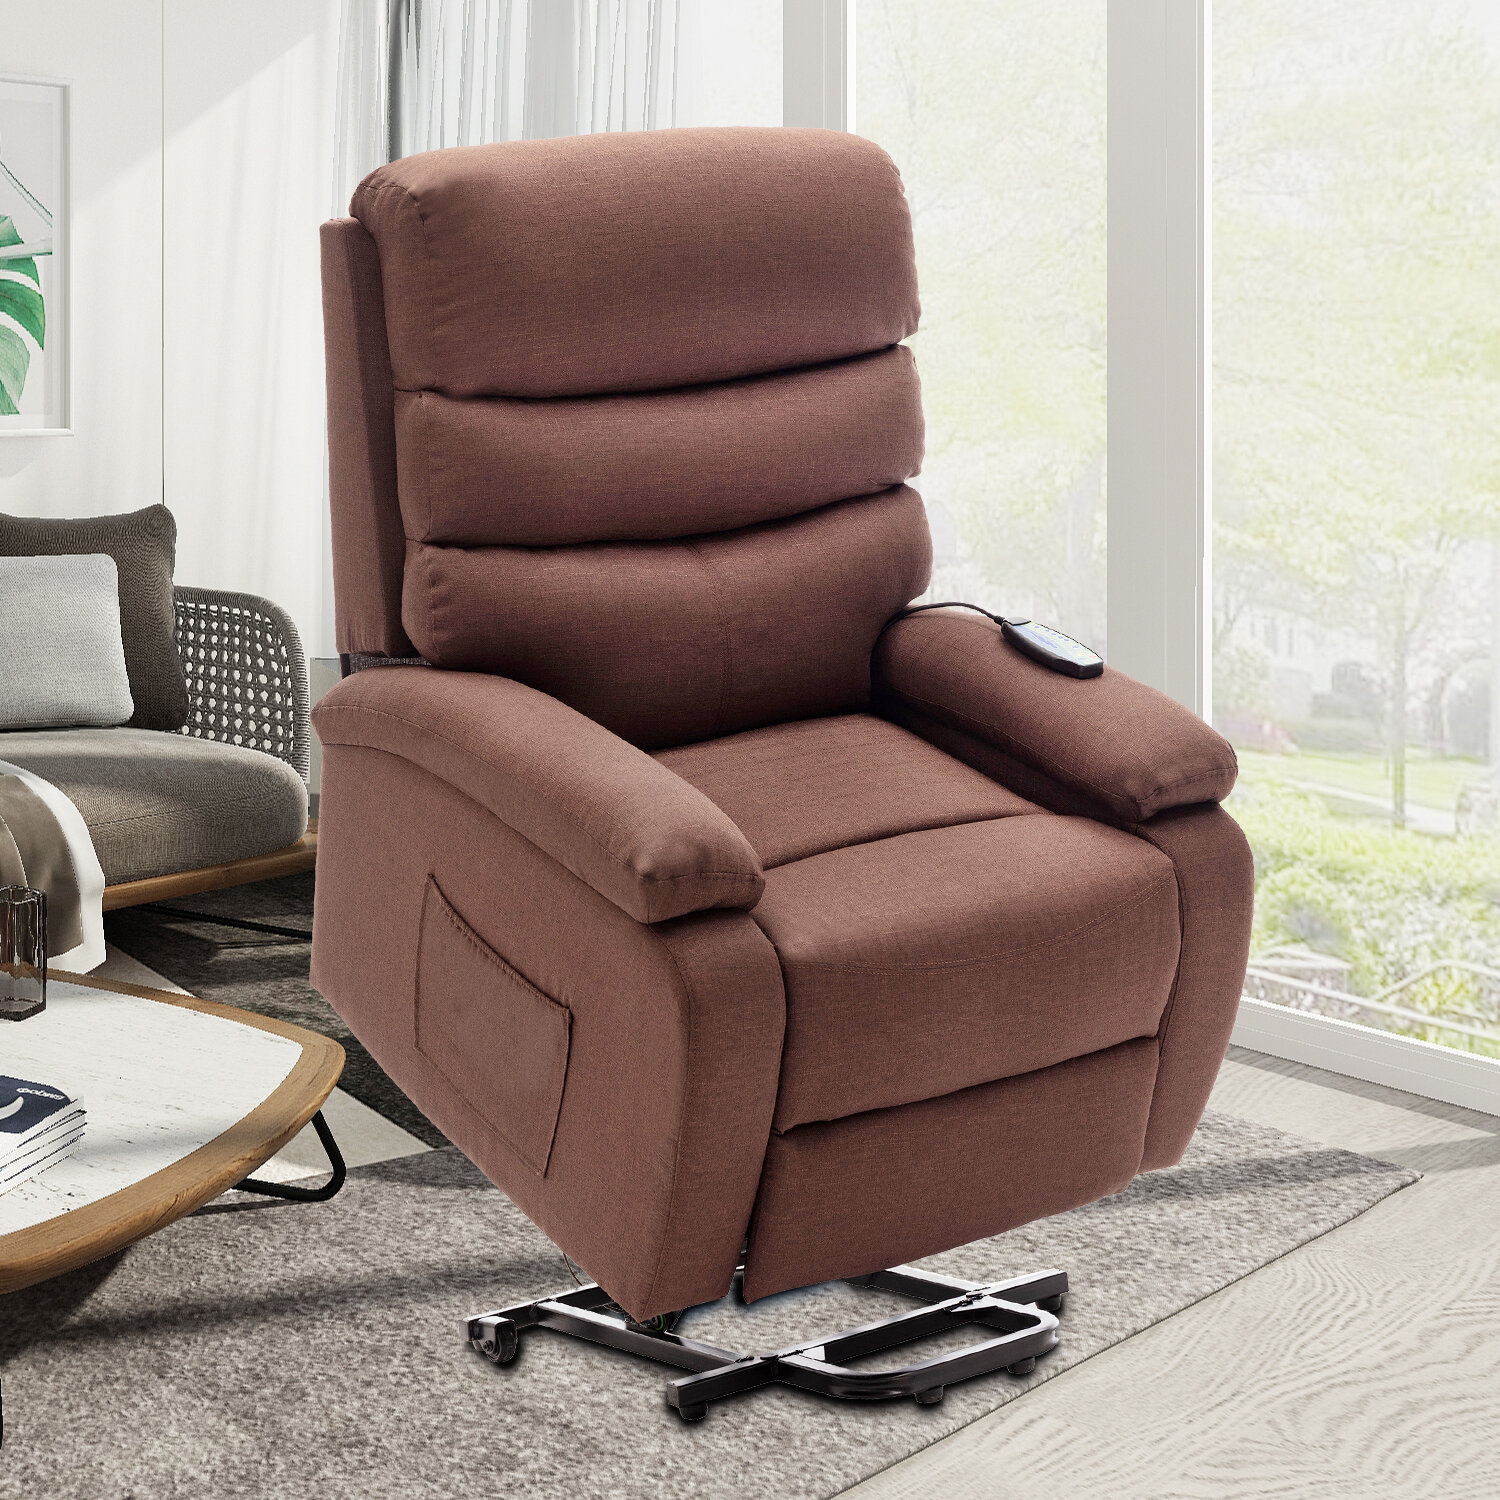 https://assets.wfcdn.com/im/02619862/compr-r85/1102/110239794/goeman-power-reclining-heated-massage-chair.jpg